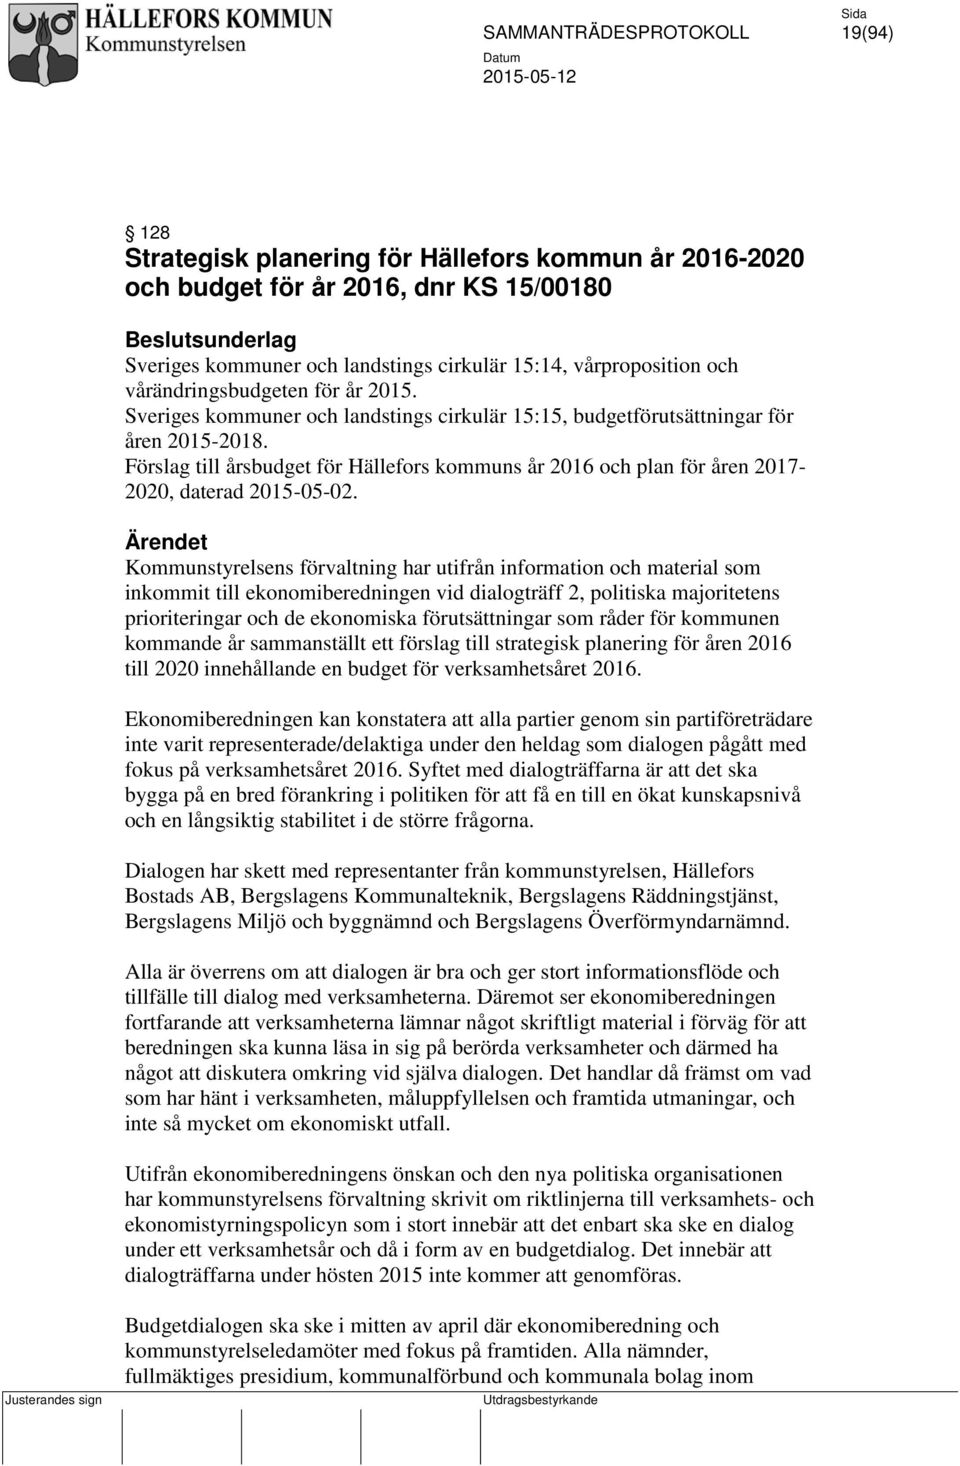 Förslag till årsbudget för Hällefors kommuns år 2016 och plan för åren 2017-2020, daterad 2015-05-02.